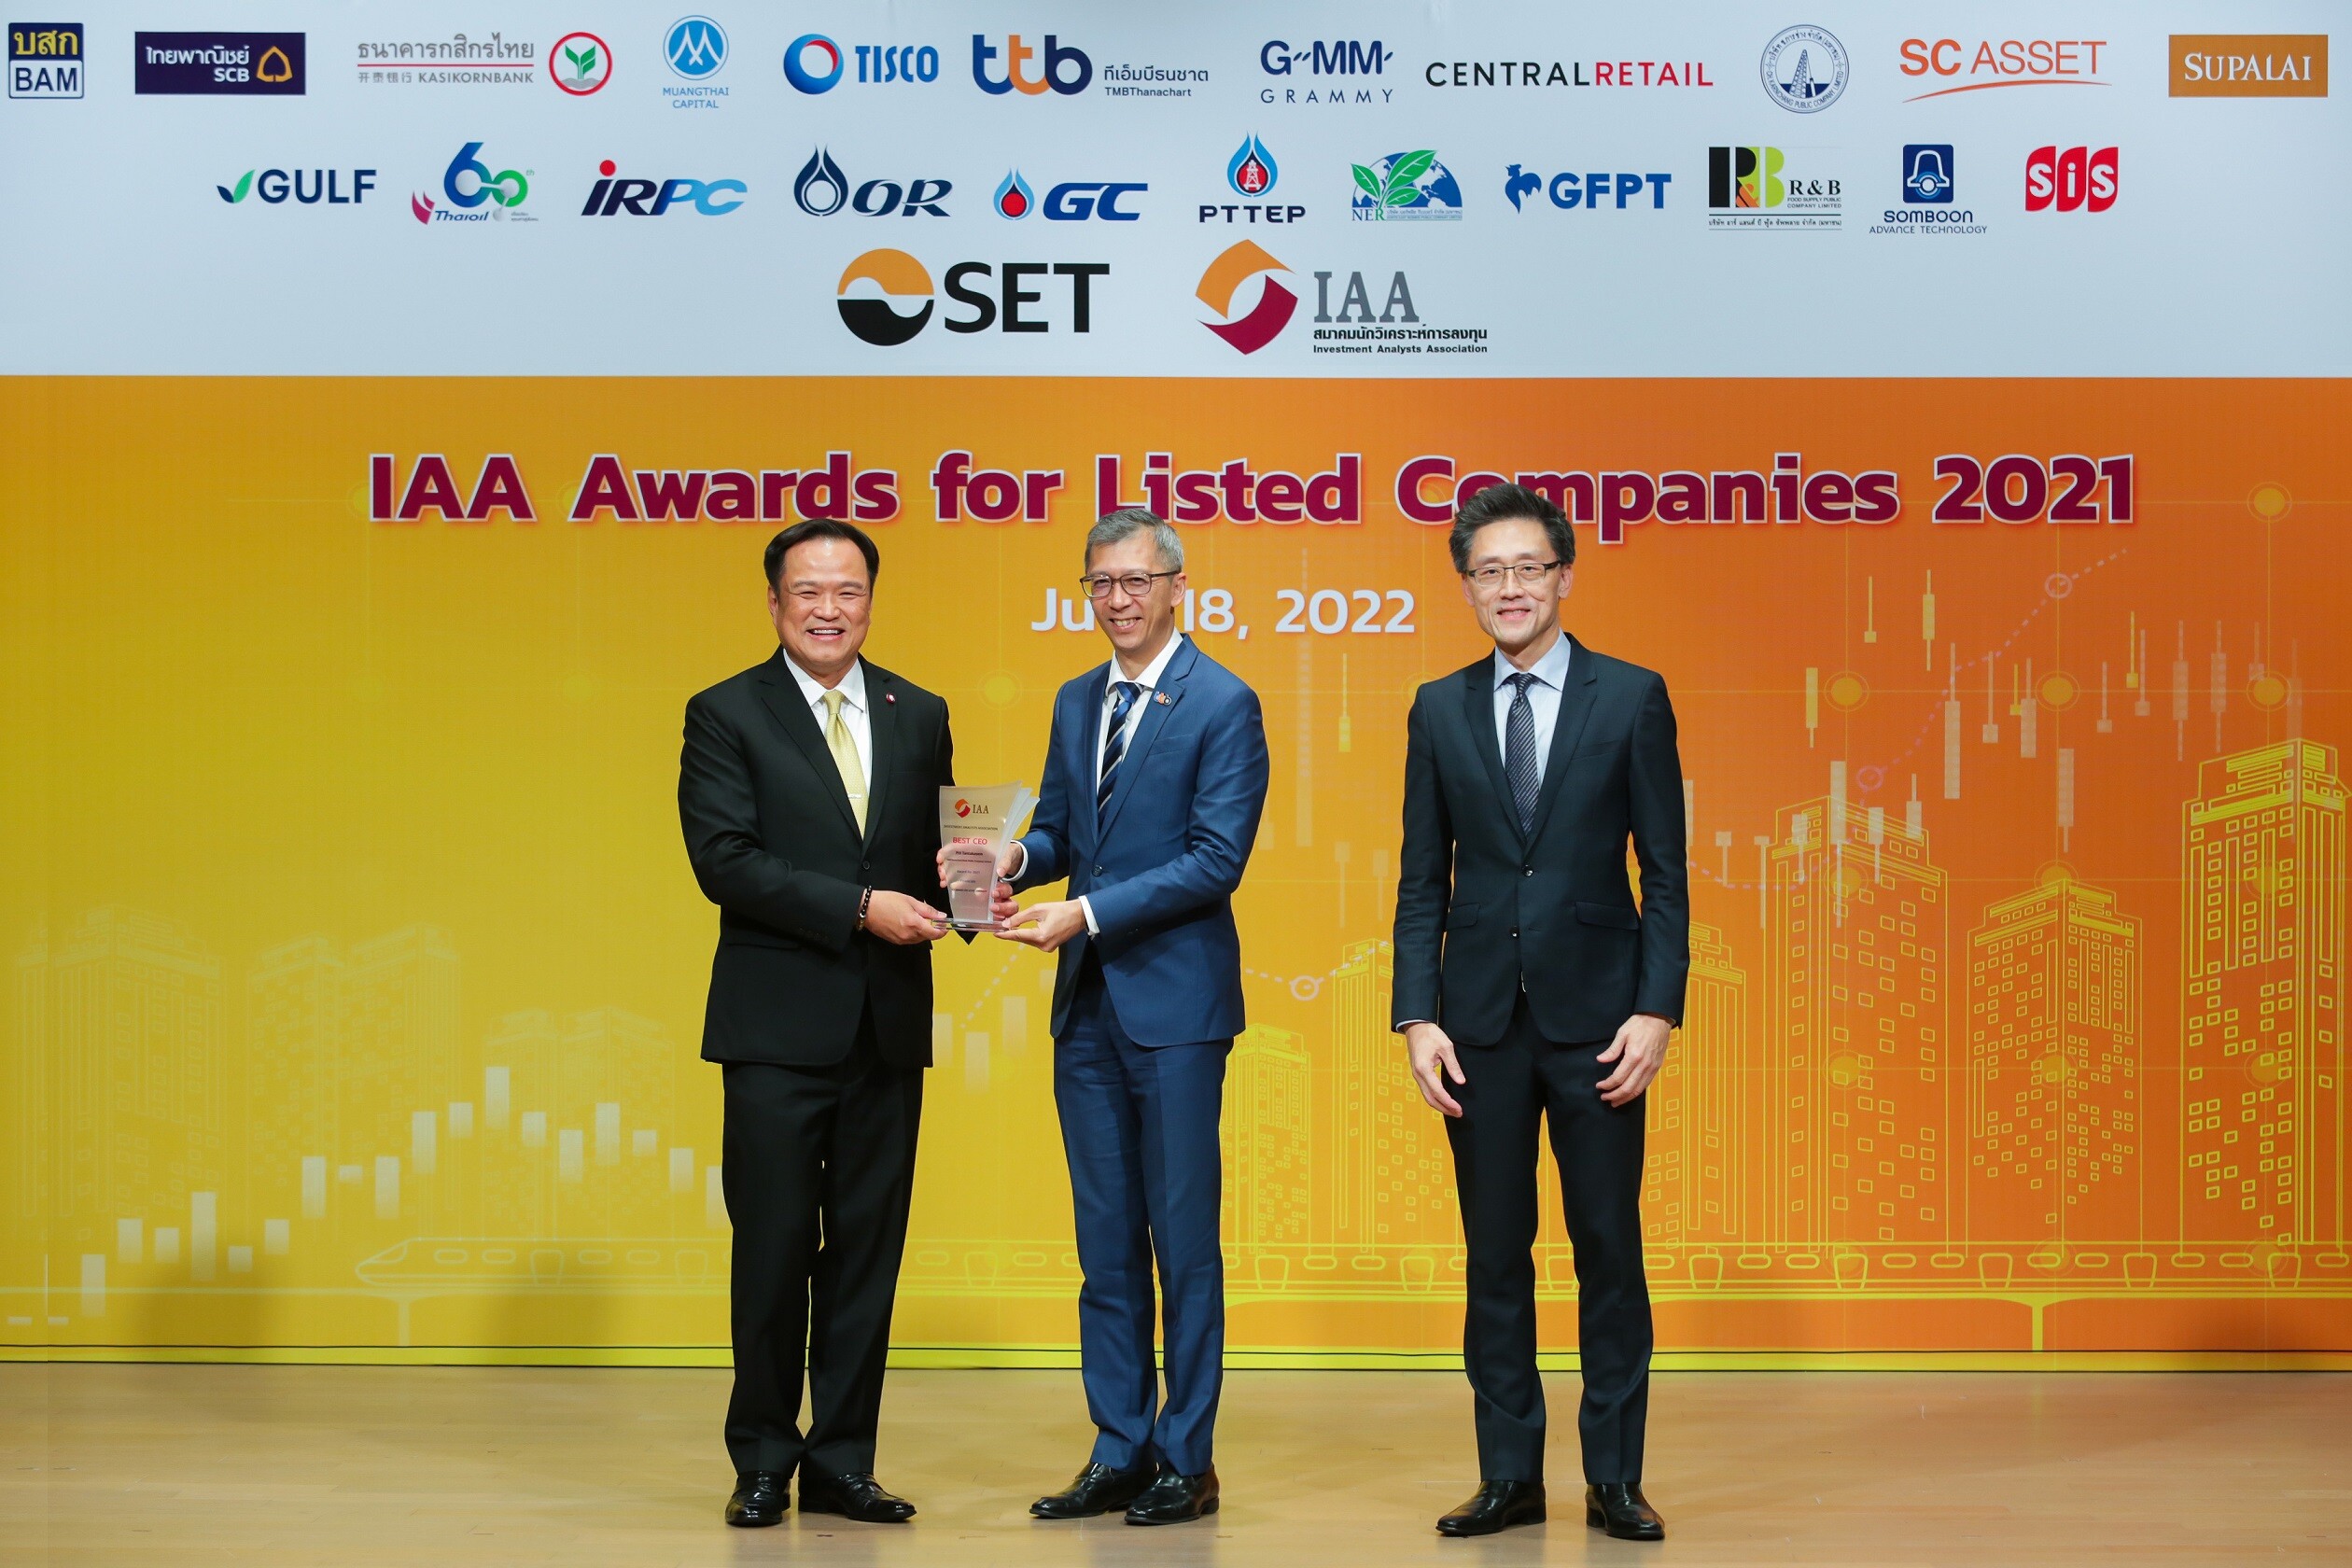 ทีเอ็มบีธนชาต คว้ารางวัล BEST CEO - กลุ่มธุรกิจการเงิน สองปีซ้อน จากเวที "IAA Awards for Listed Companies 2021"